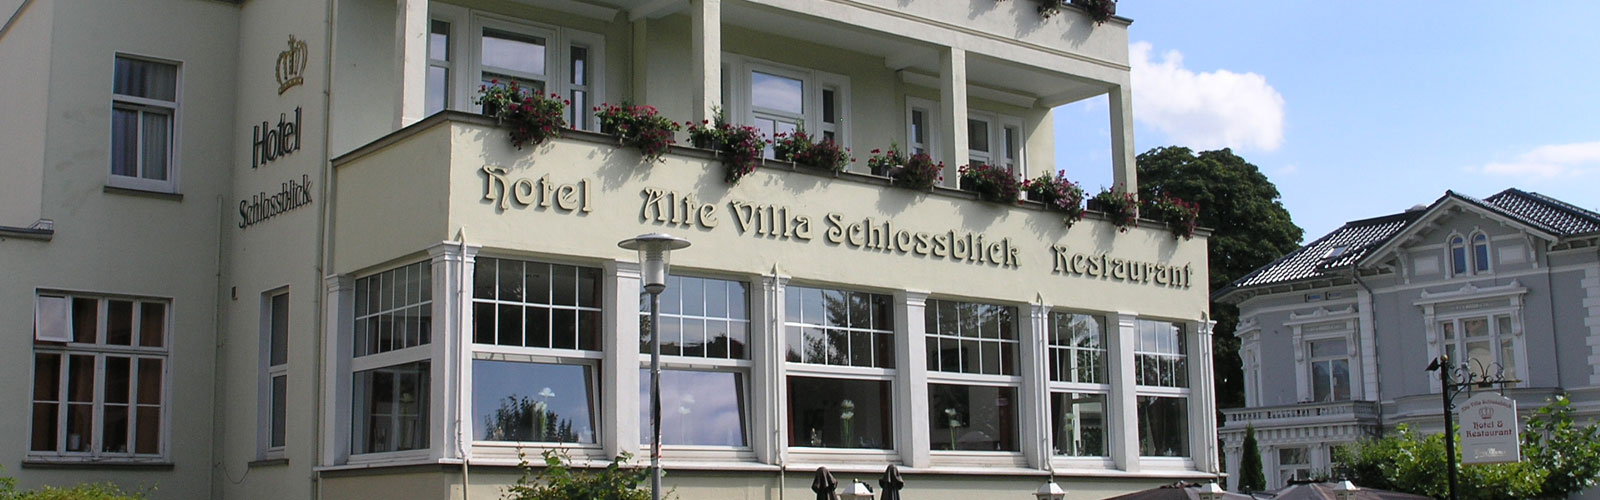 Alte Villa Schlossblick Hotel Restaurant Bad Pyrmont